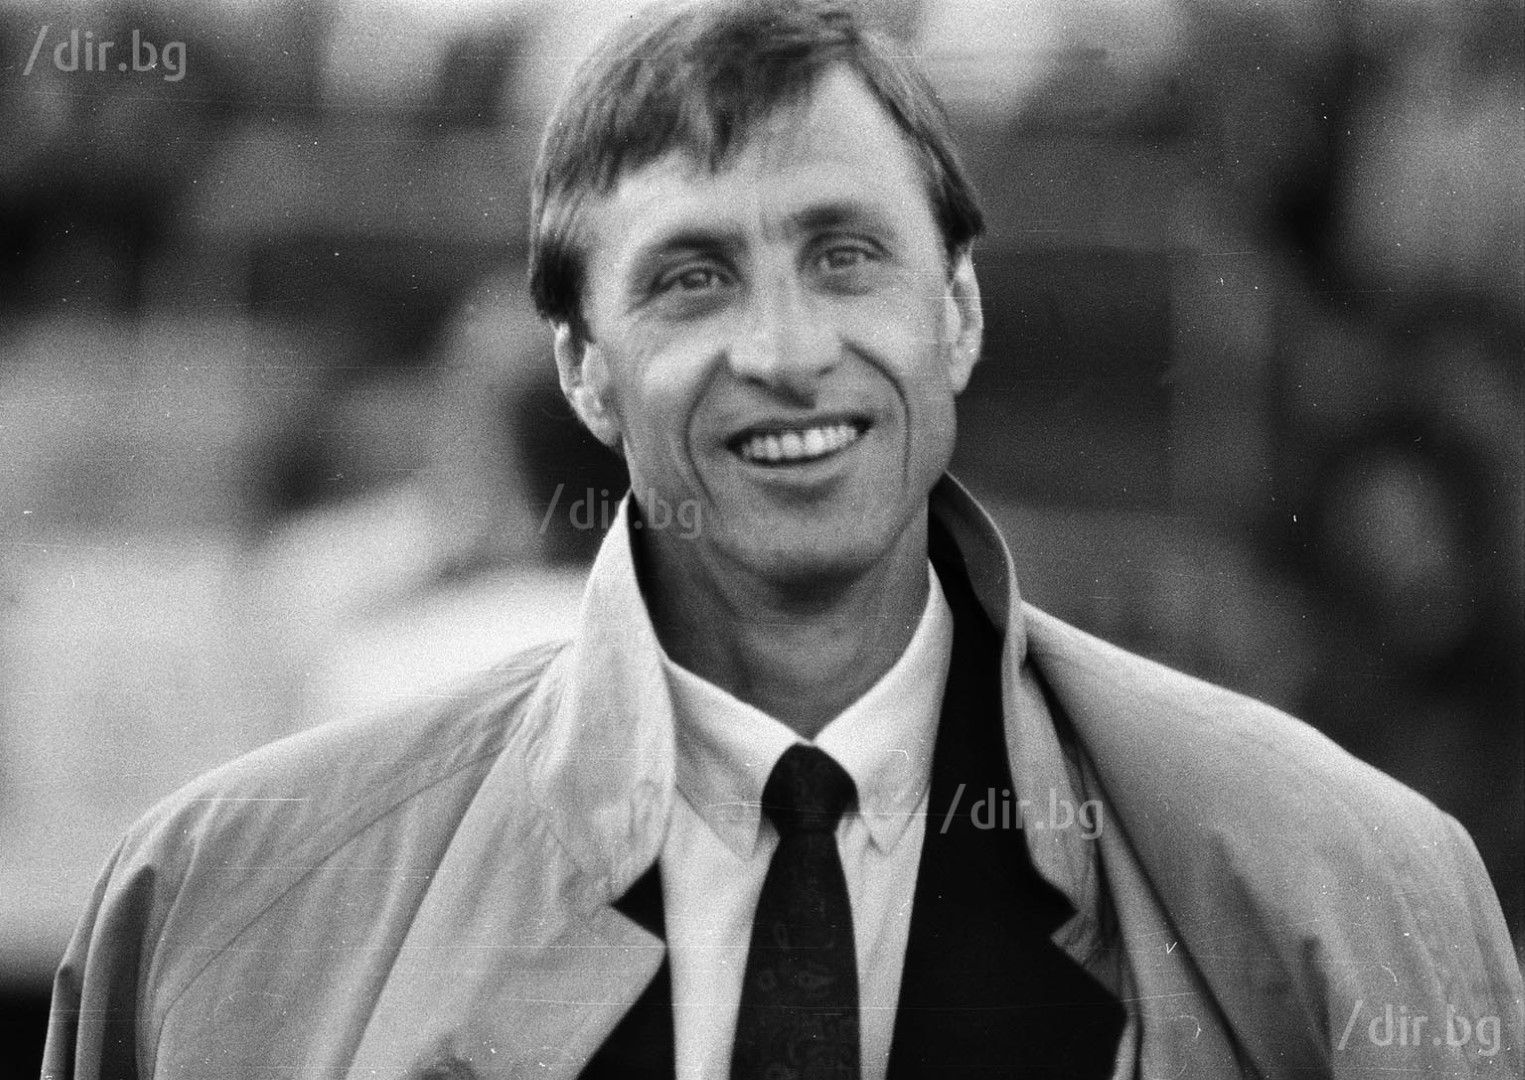 Кройф дойде в София и като треньор - водеше "Барса" срещу ЦСКА през 1989 г. в турнира за КНК. Снимка ИВАН ГРИГОРОВ